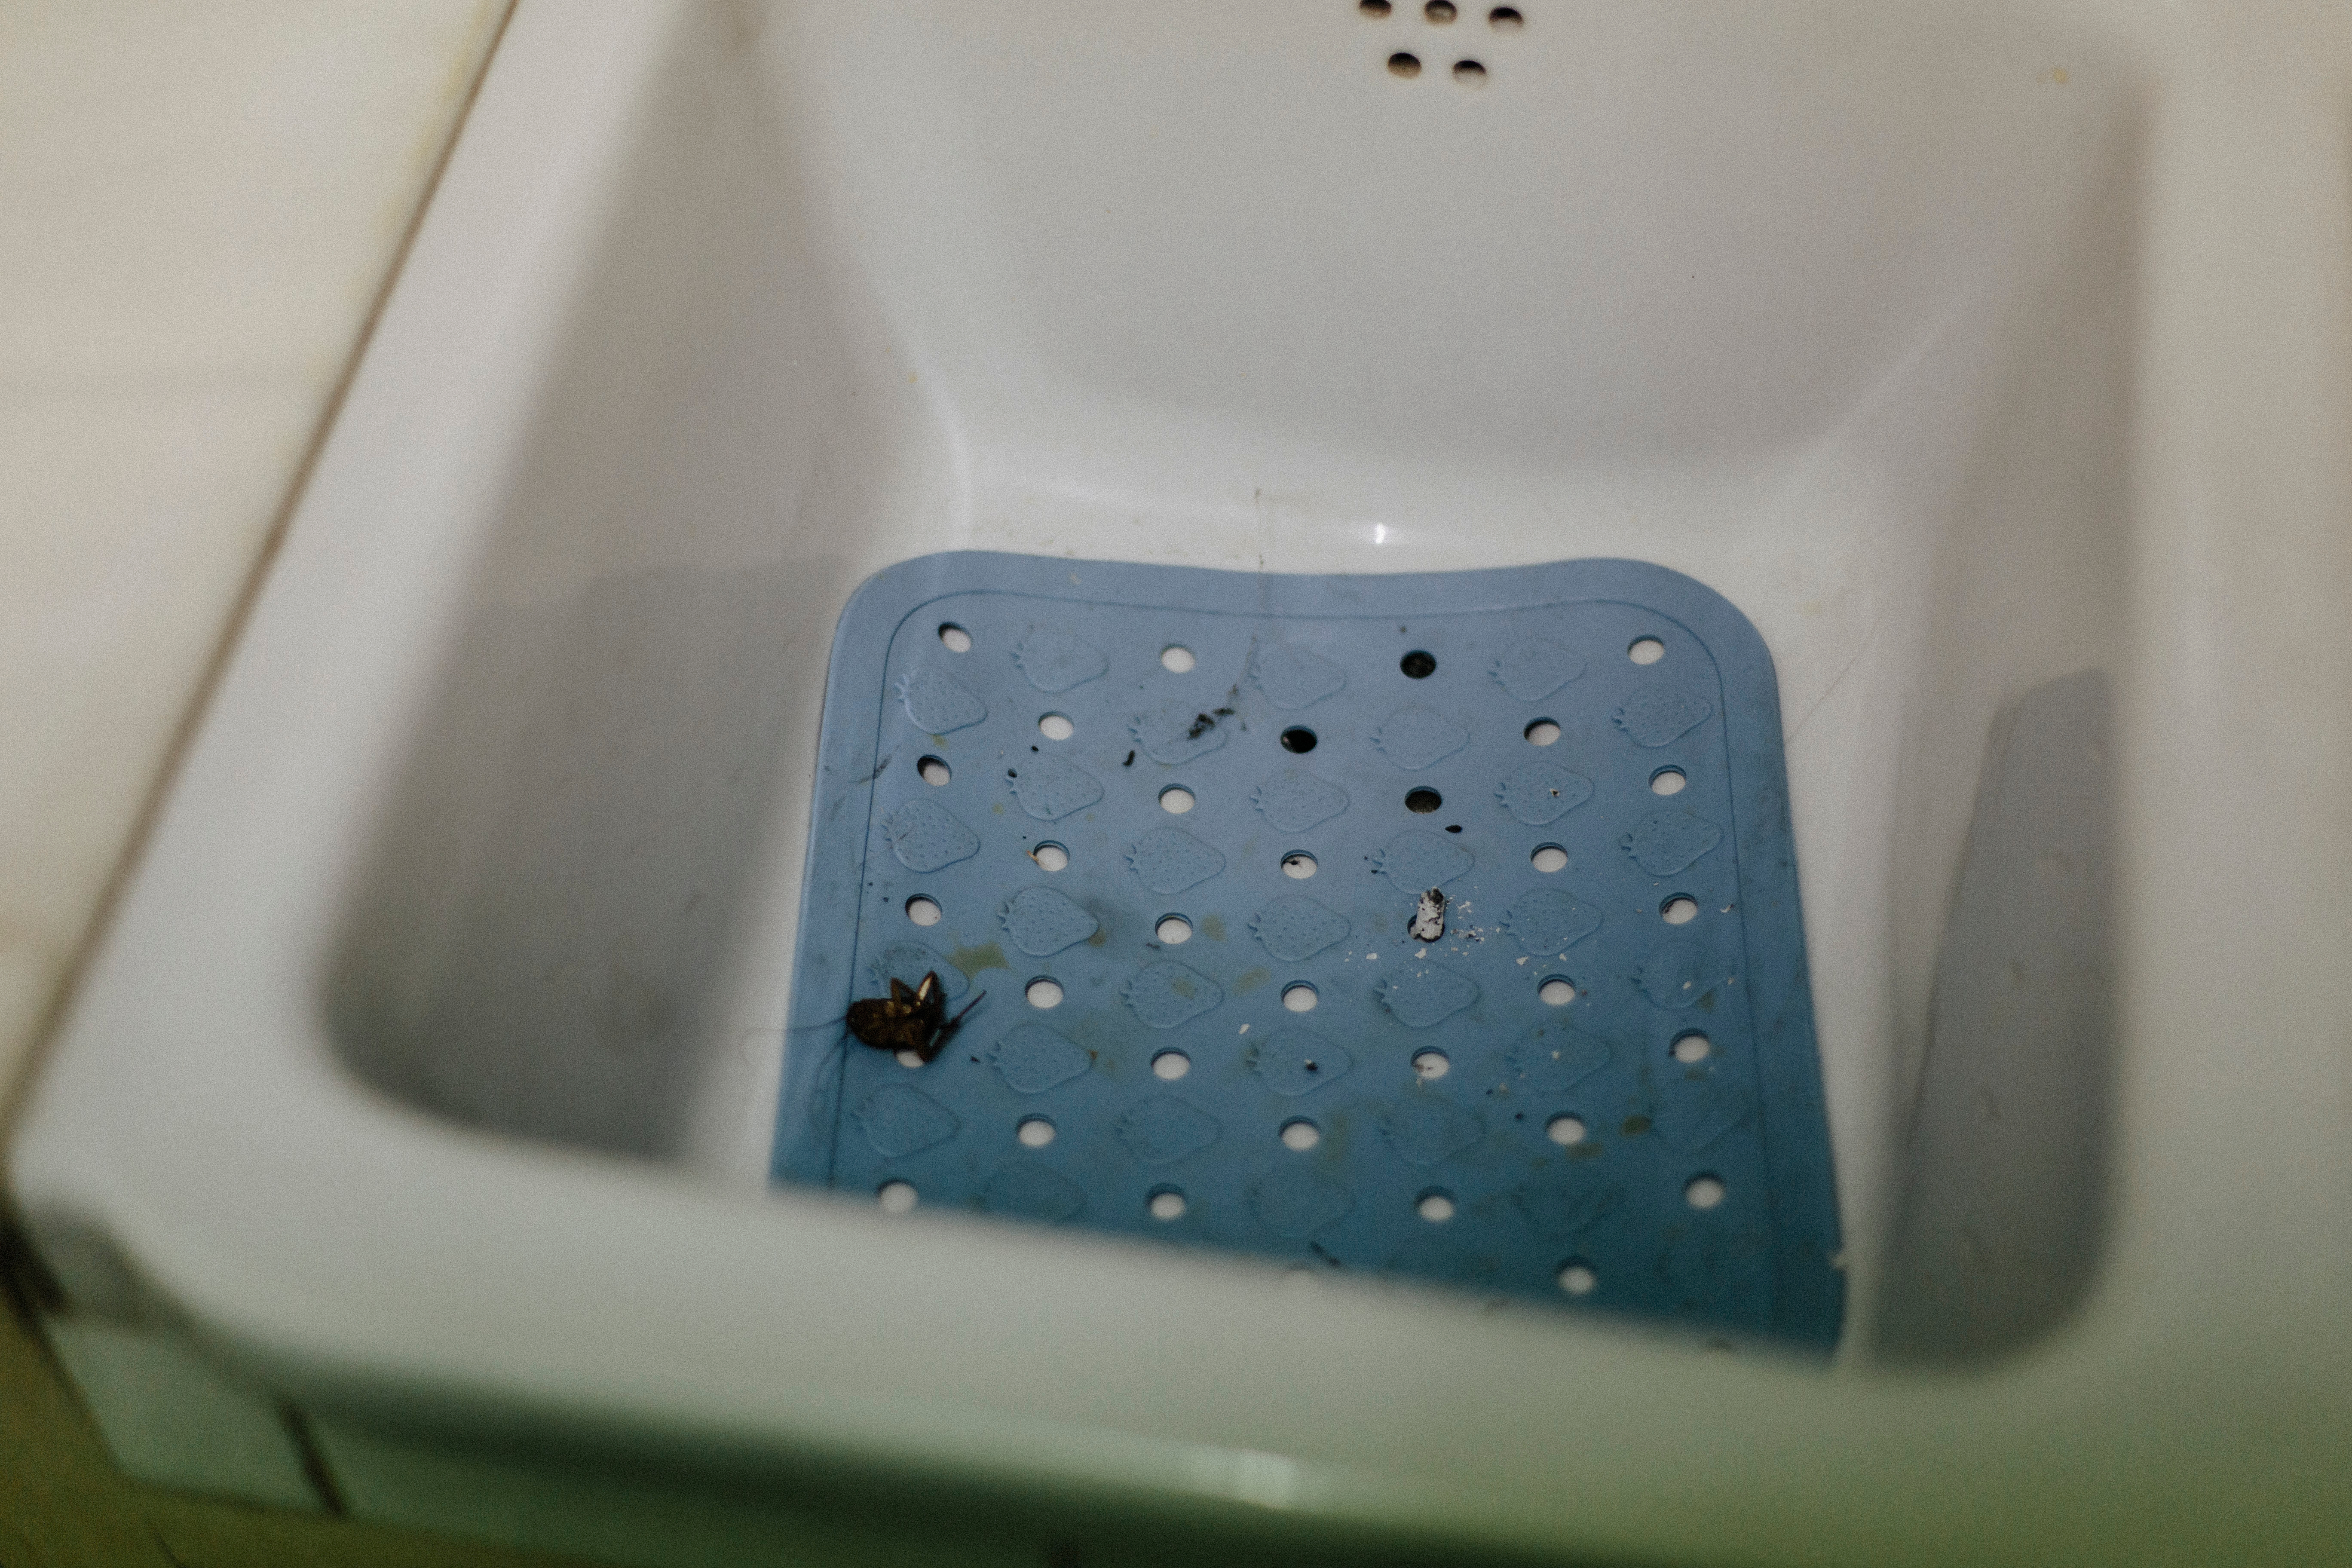 A little black bug in a bathroom sink | Source: Shutterstock